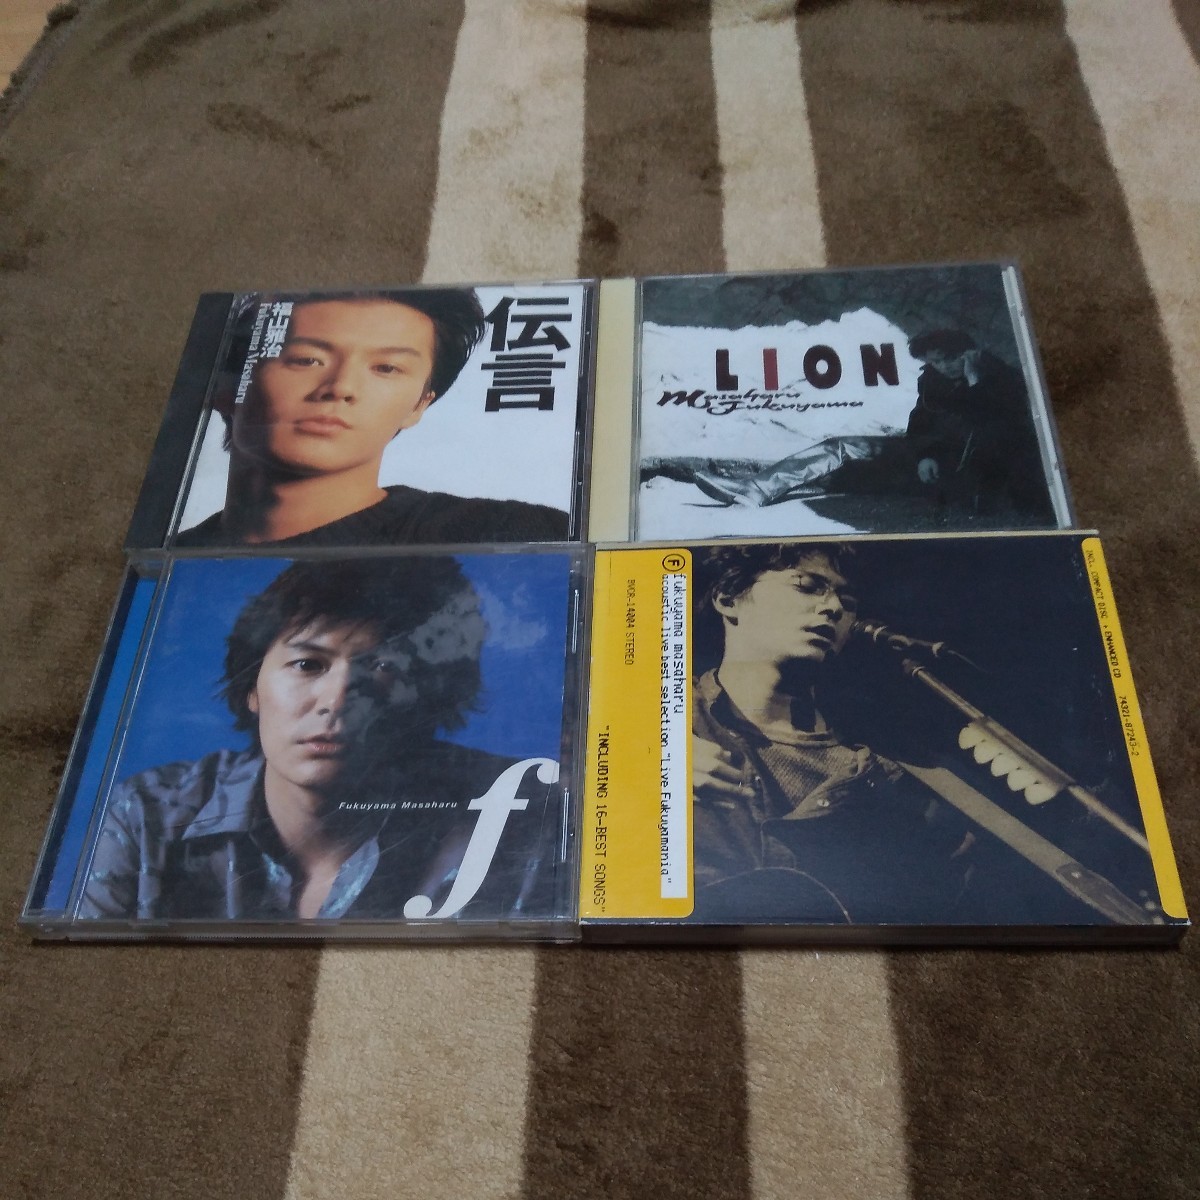 福山雅治 伝言 LION f acoustic llve best selection Live Fukuyamania アルバム CD セット 4枚の画像1